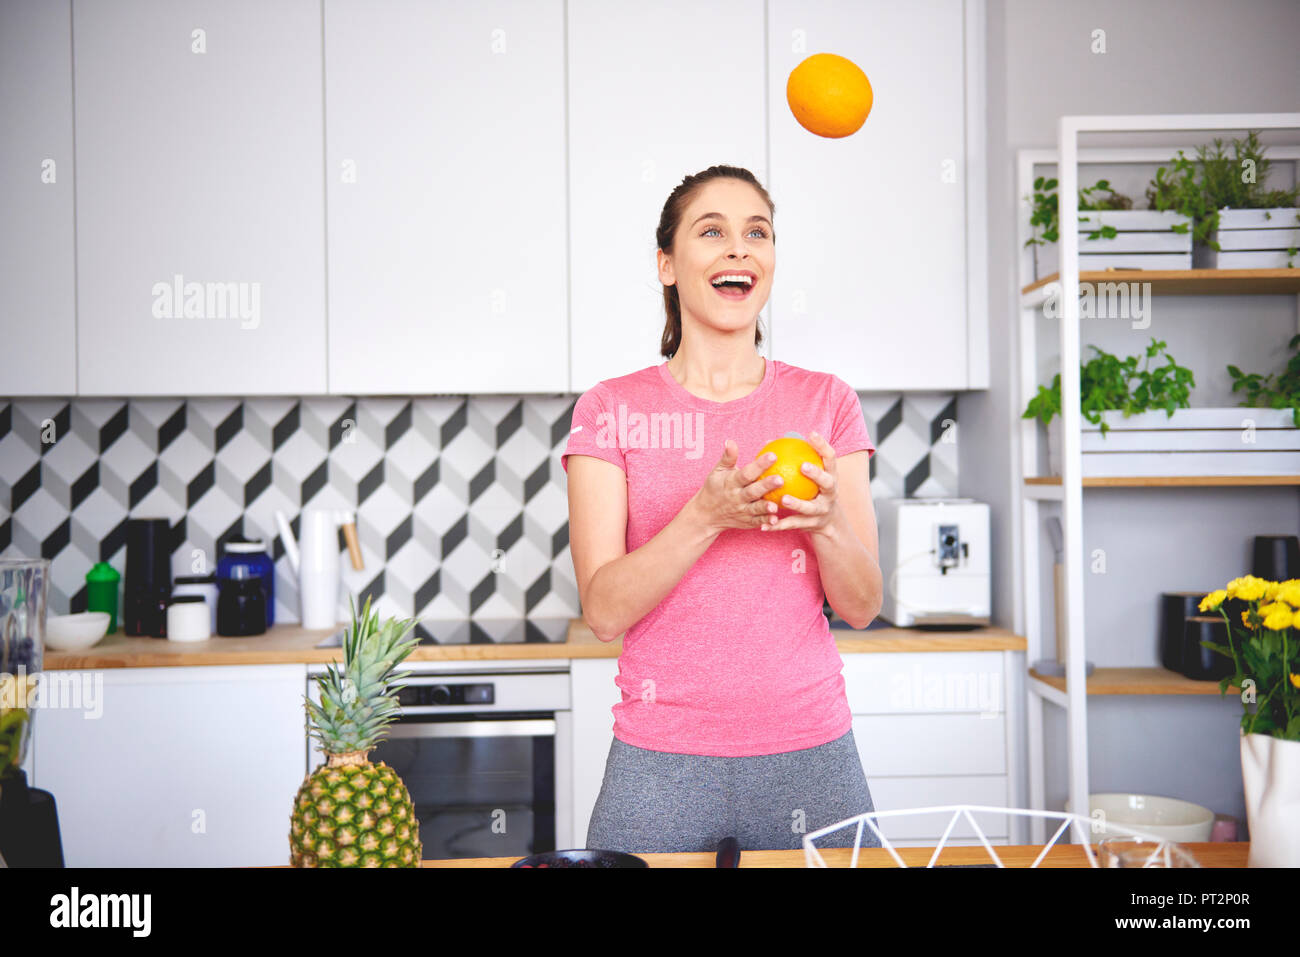 Portrait de jeune femme à jongler avec des oranges dans la cuisine Banque D'Images